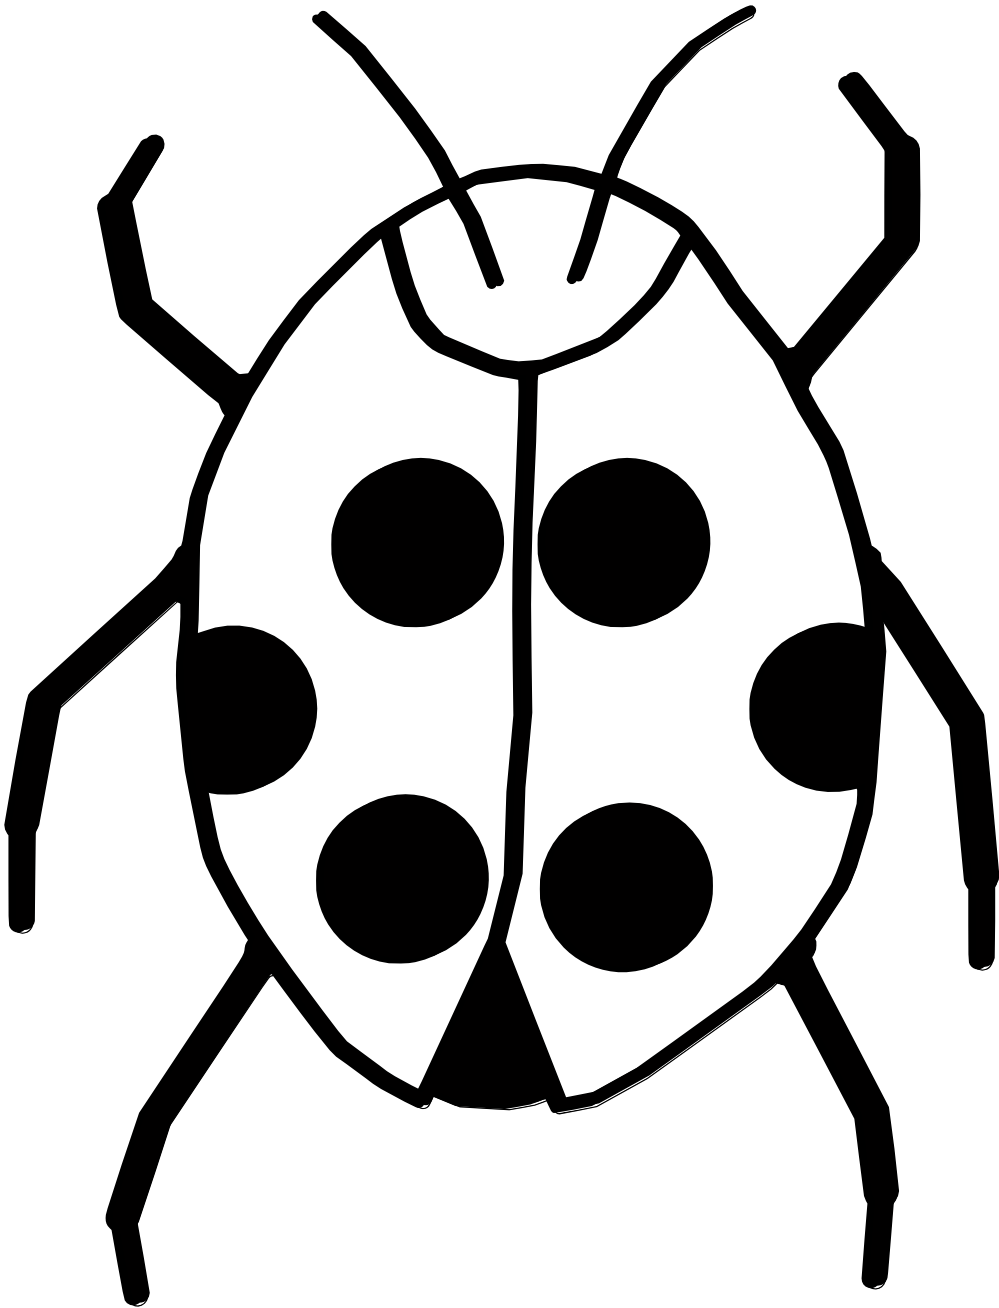 Ladybug black and white clipart